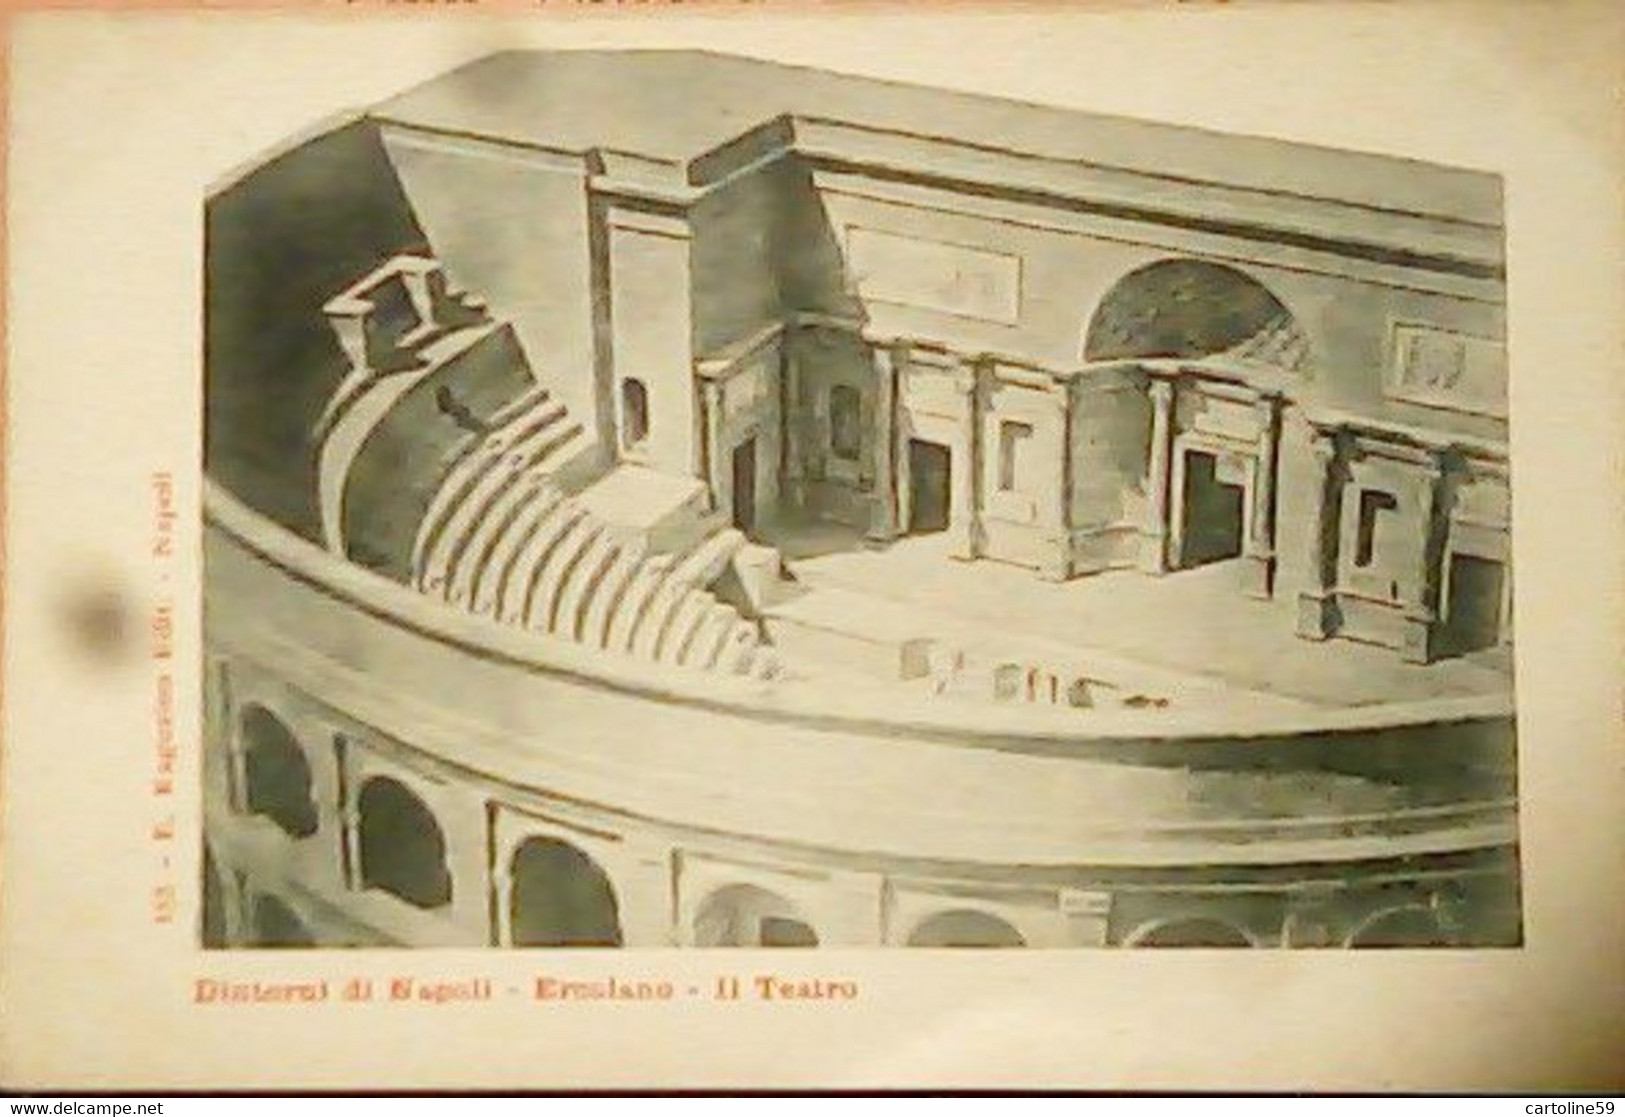 Napoli-Dintorni -Ercolano -Il Teatro ED RAHGOZZINO 155 N1900 HZ5314 - Ercolano